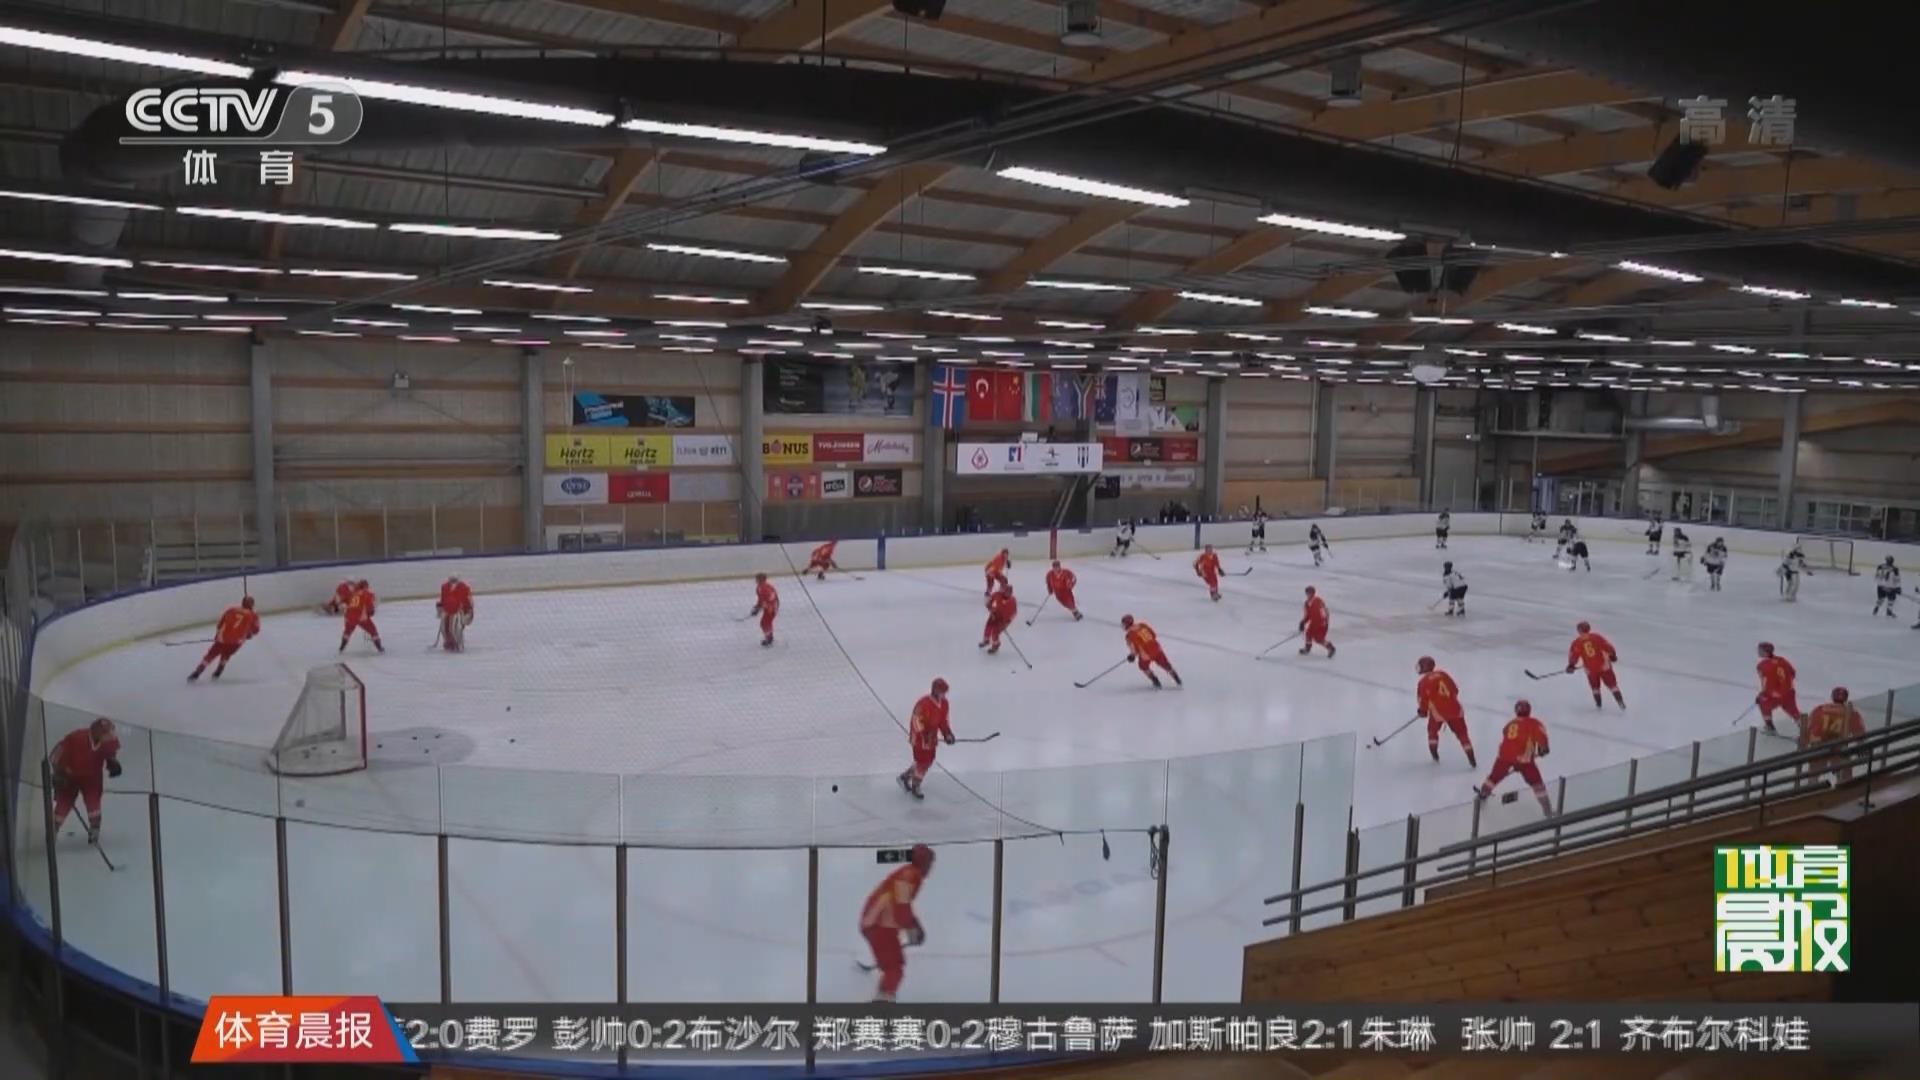 连续大胜 中国U20男子冰球队顺利出线